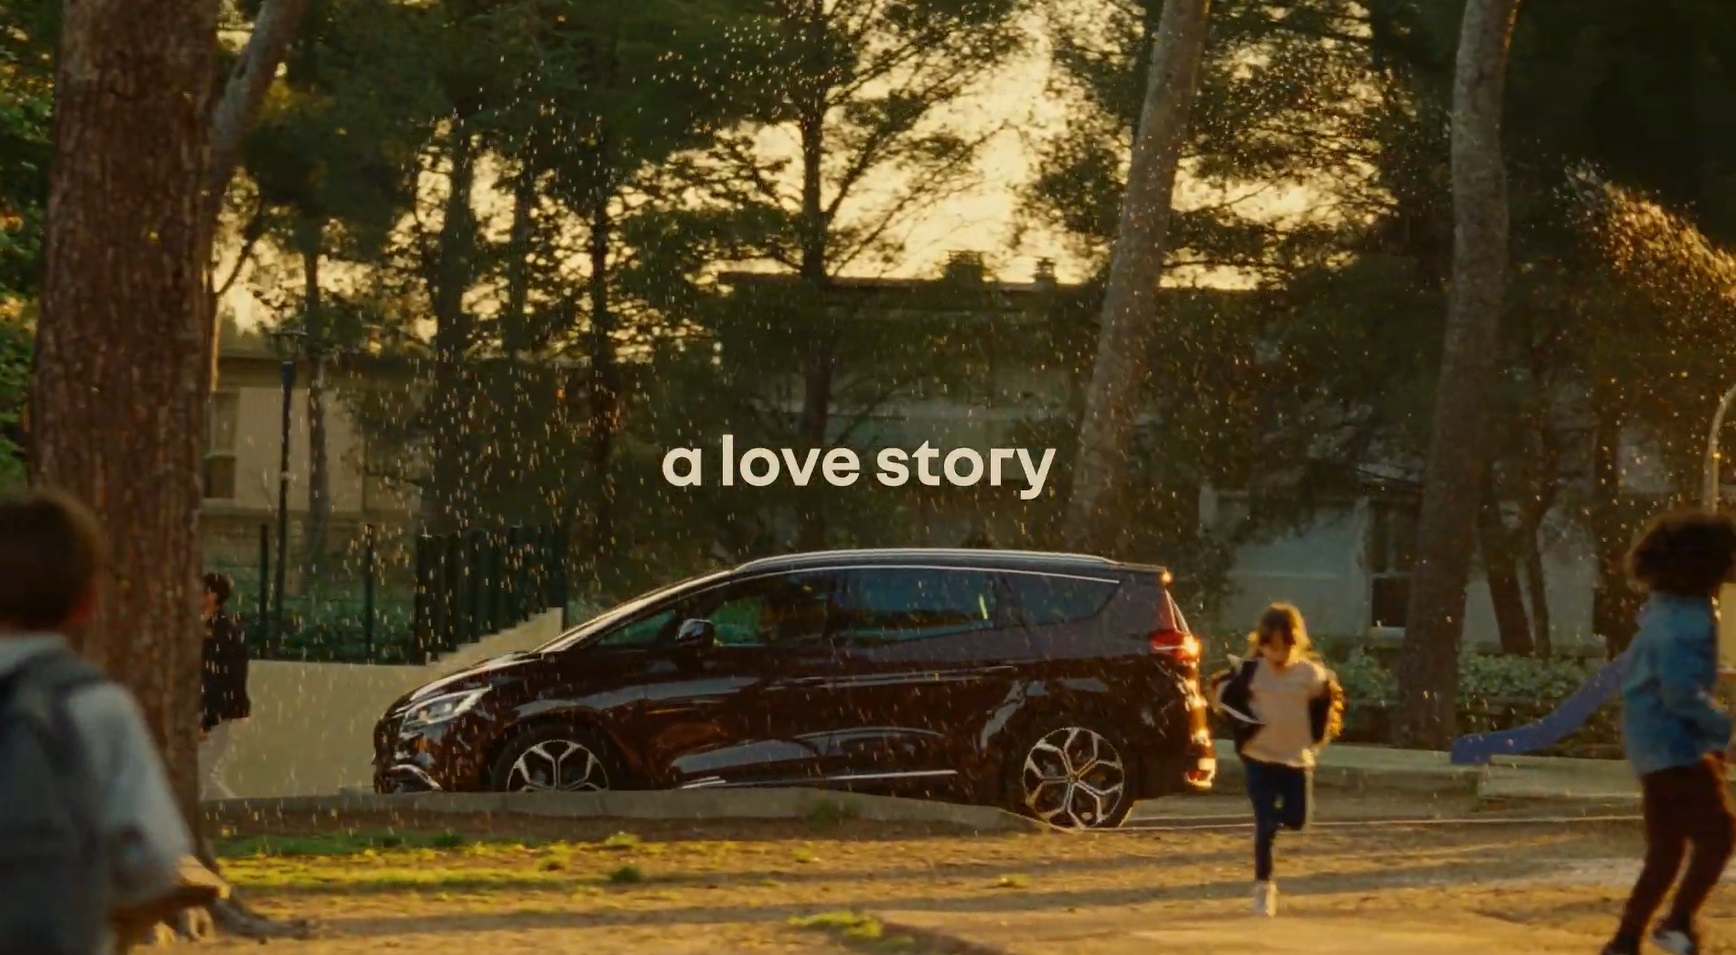 Renault Scenic ,amado , familias ,25 años, a love story, programapublicidad